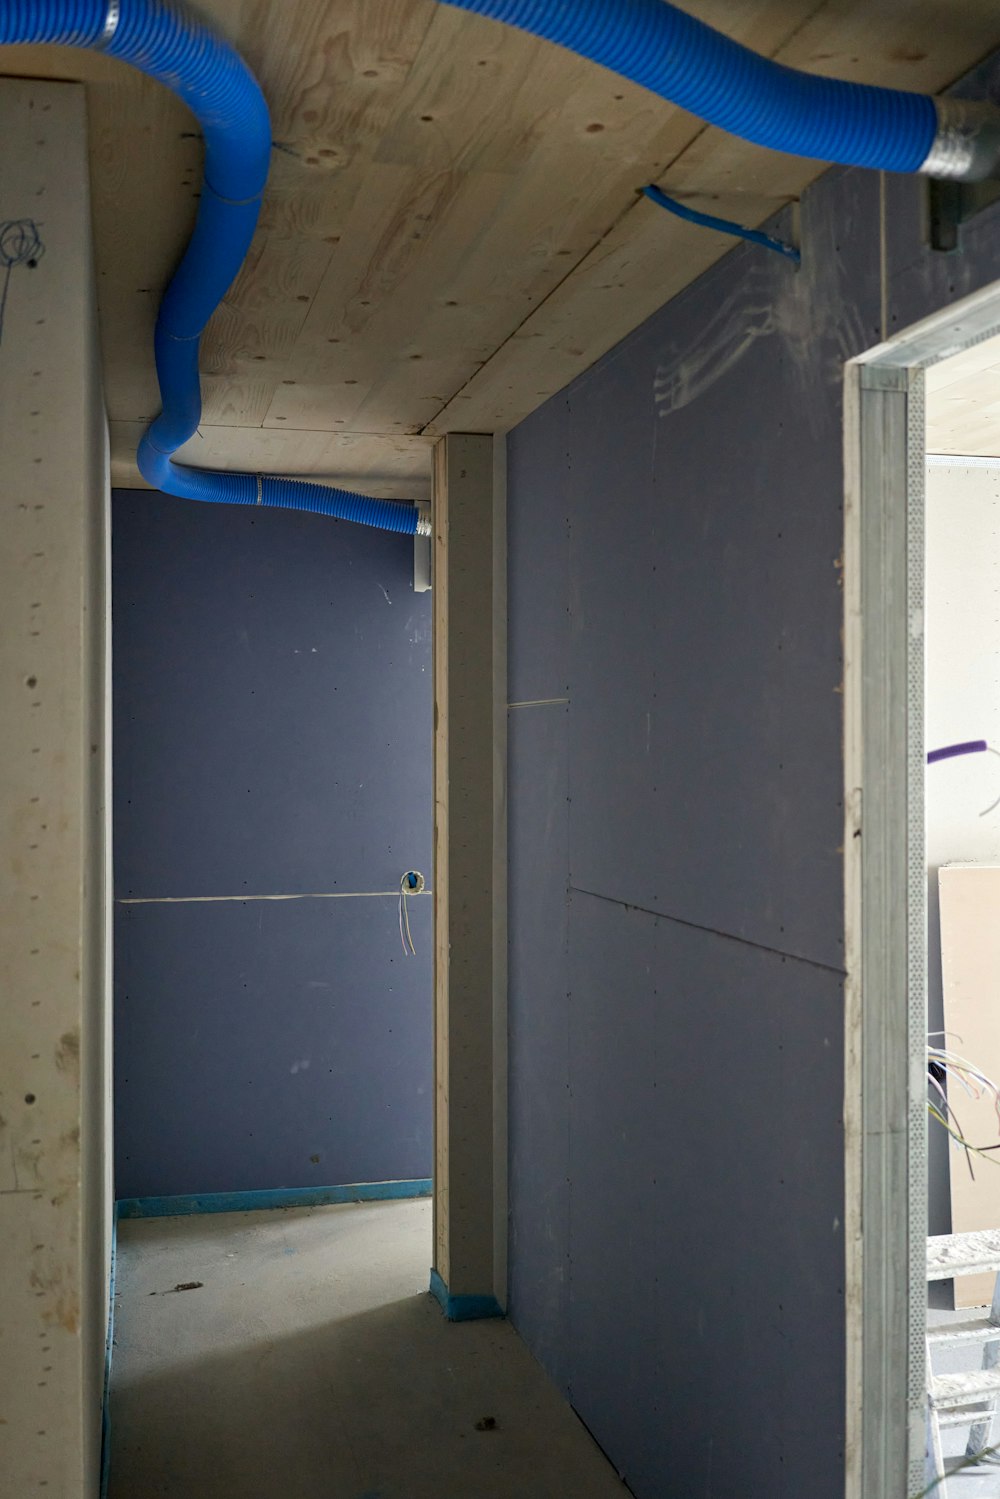 una habitación inacabada con una tubería azul que corre por la pared